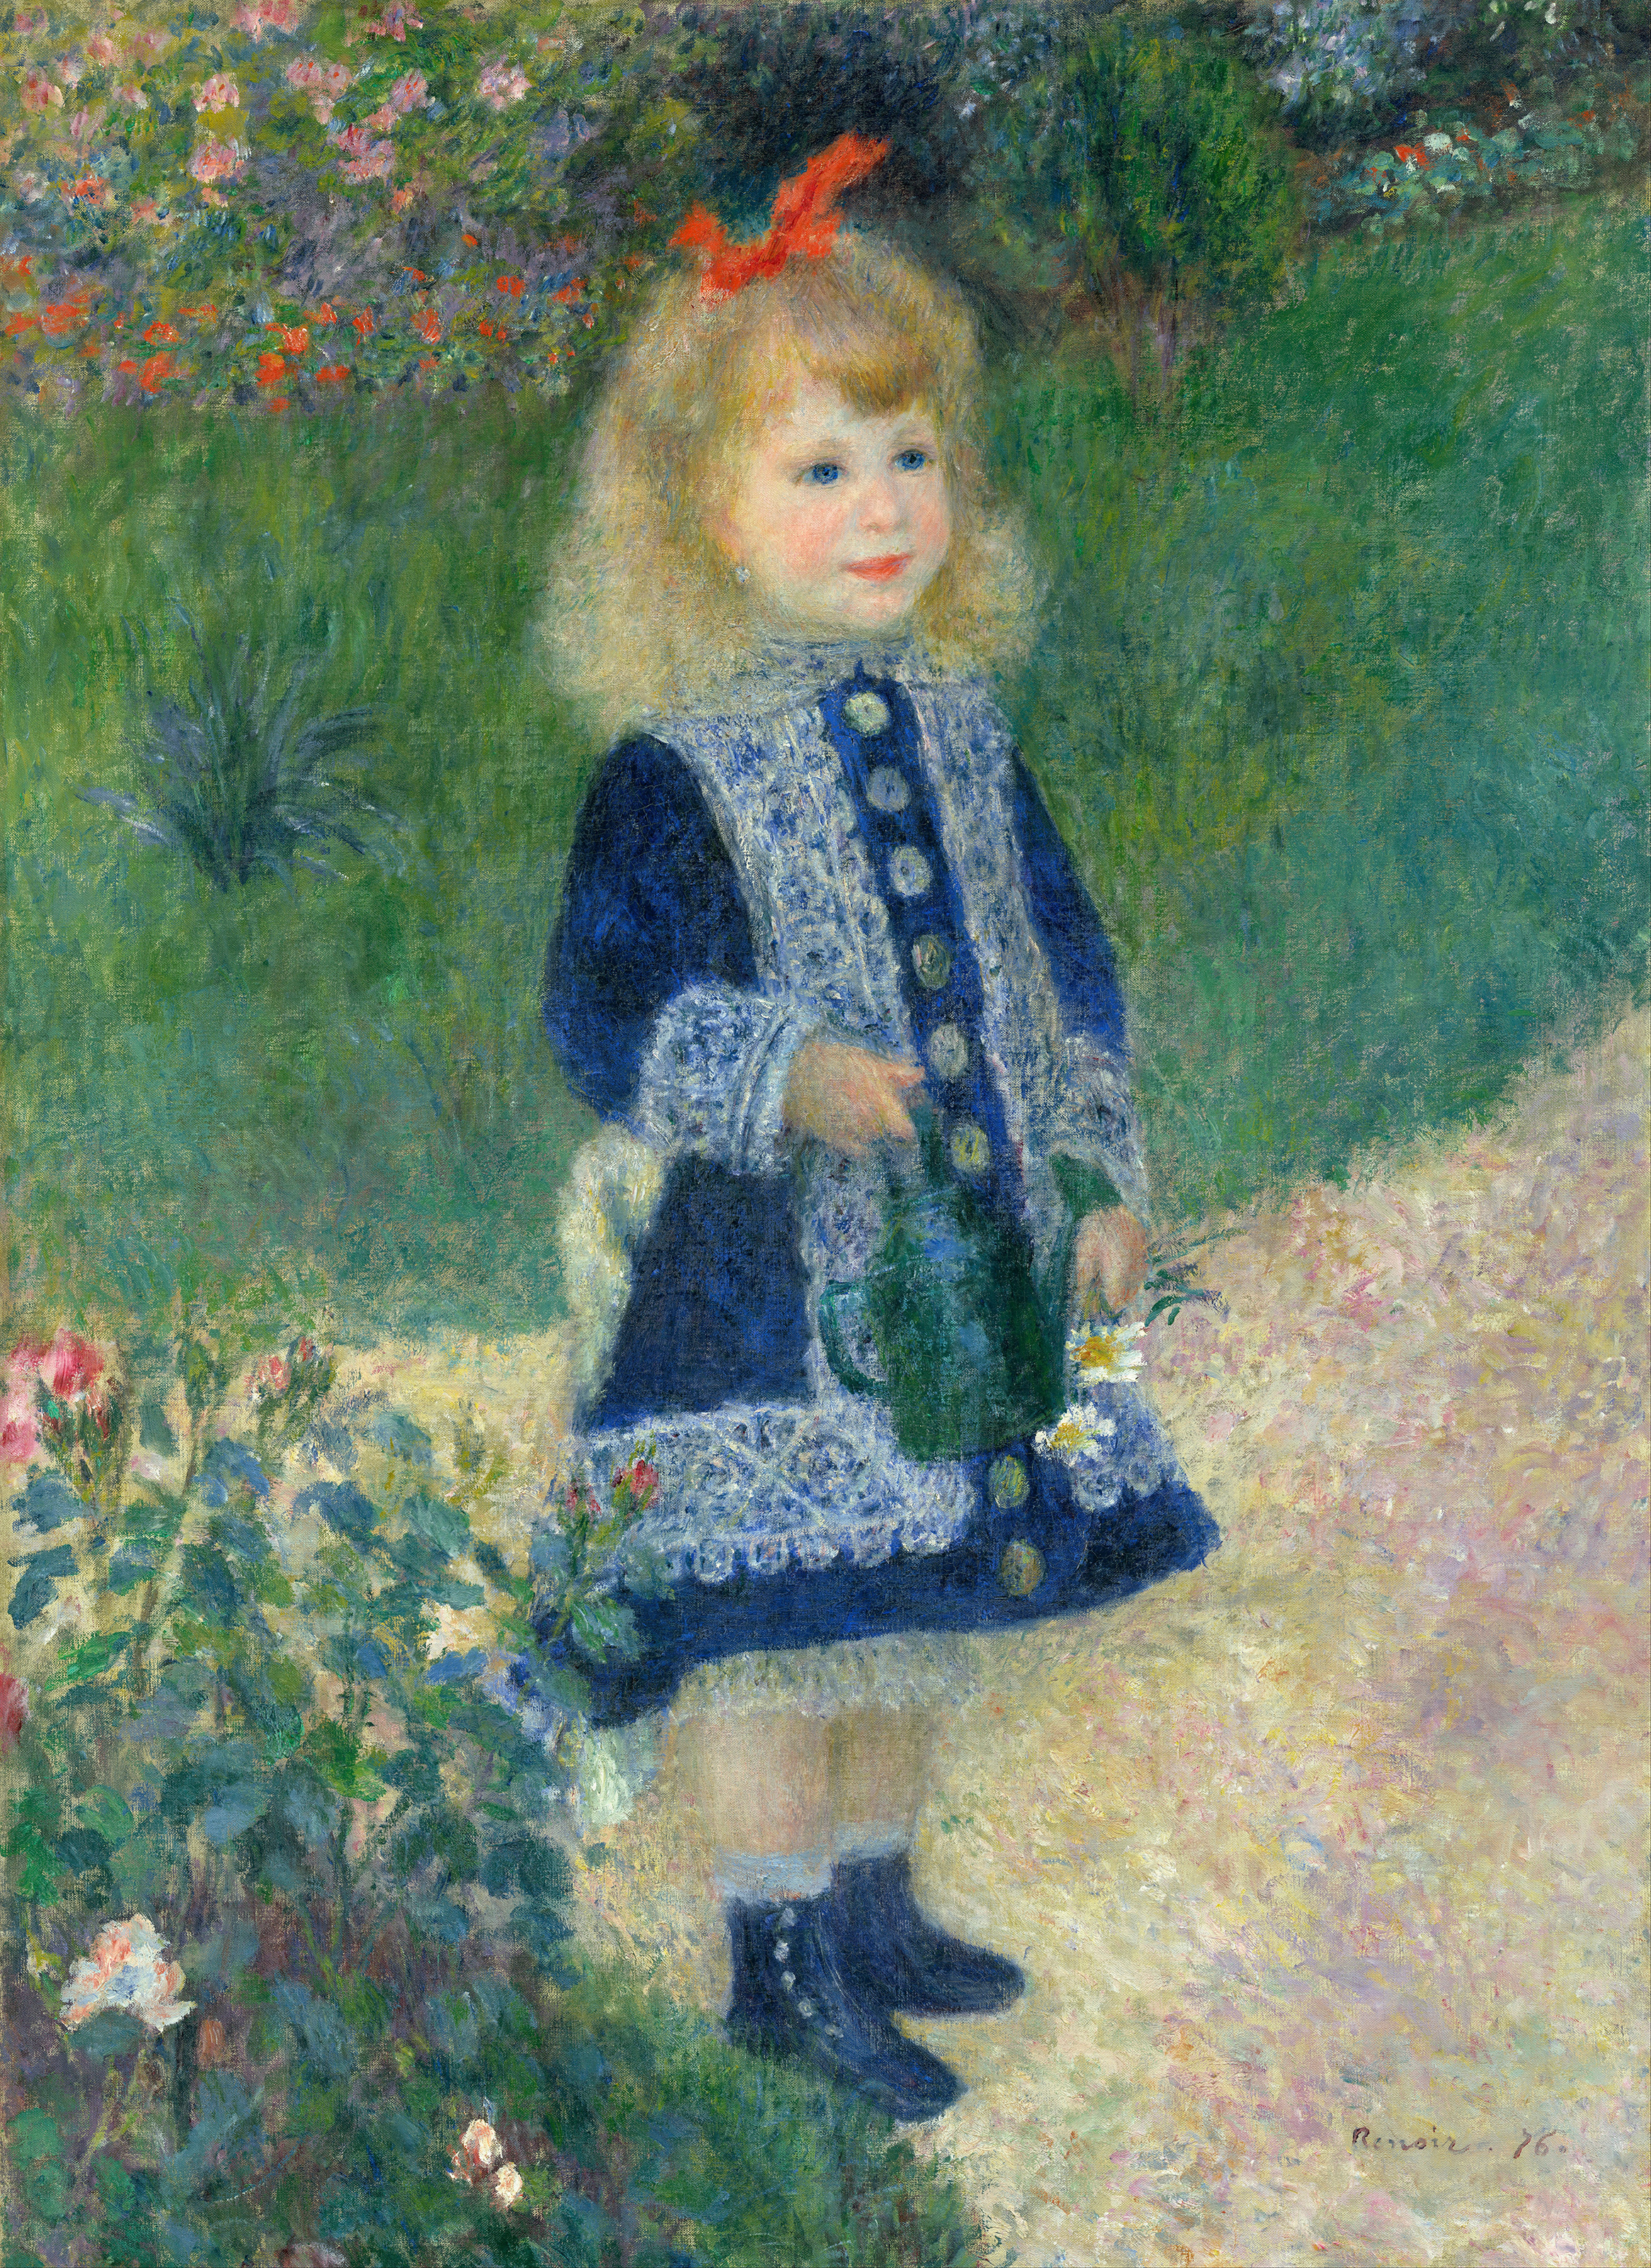 拿著水壺的小女孩 by Pierre-Auguste Renoir - 1876 - 73 x 100 cm 